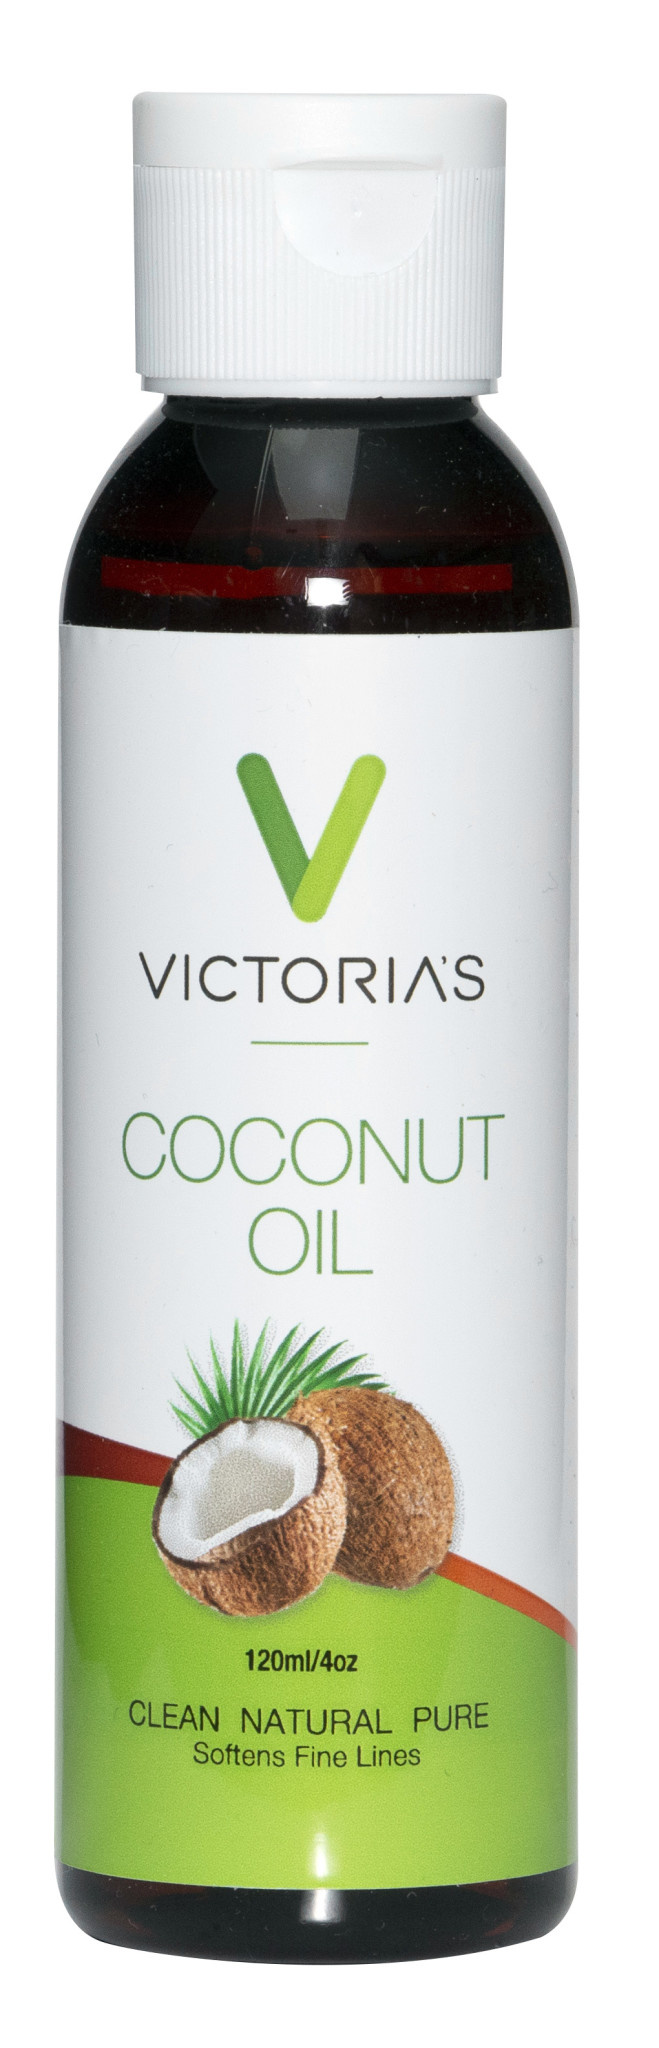 Victoria's - Coconut Oil - 120ml